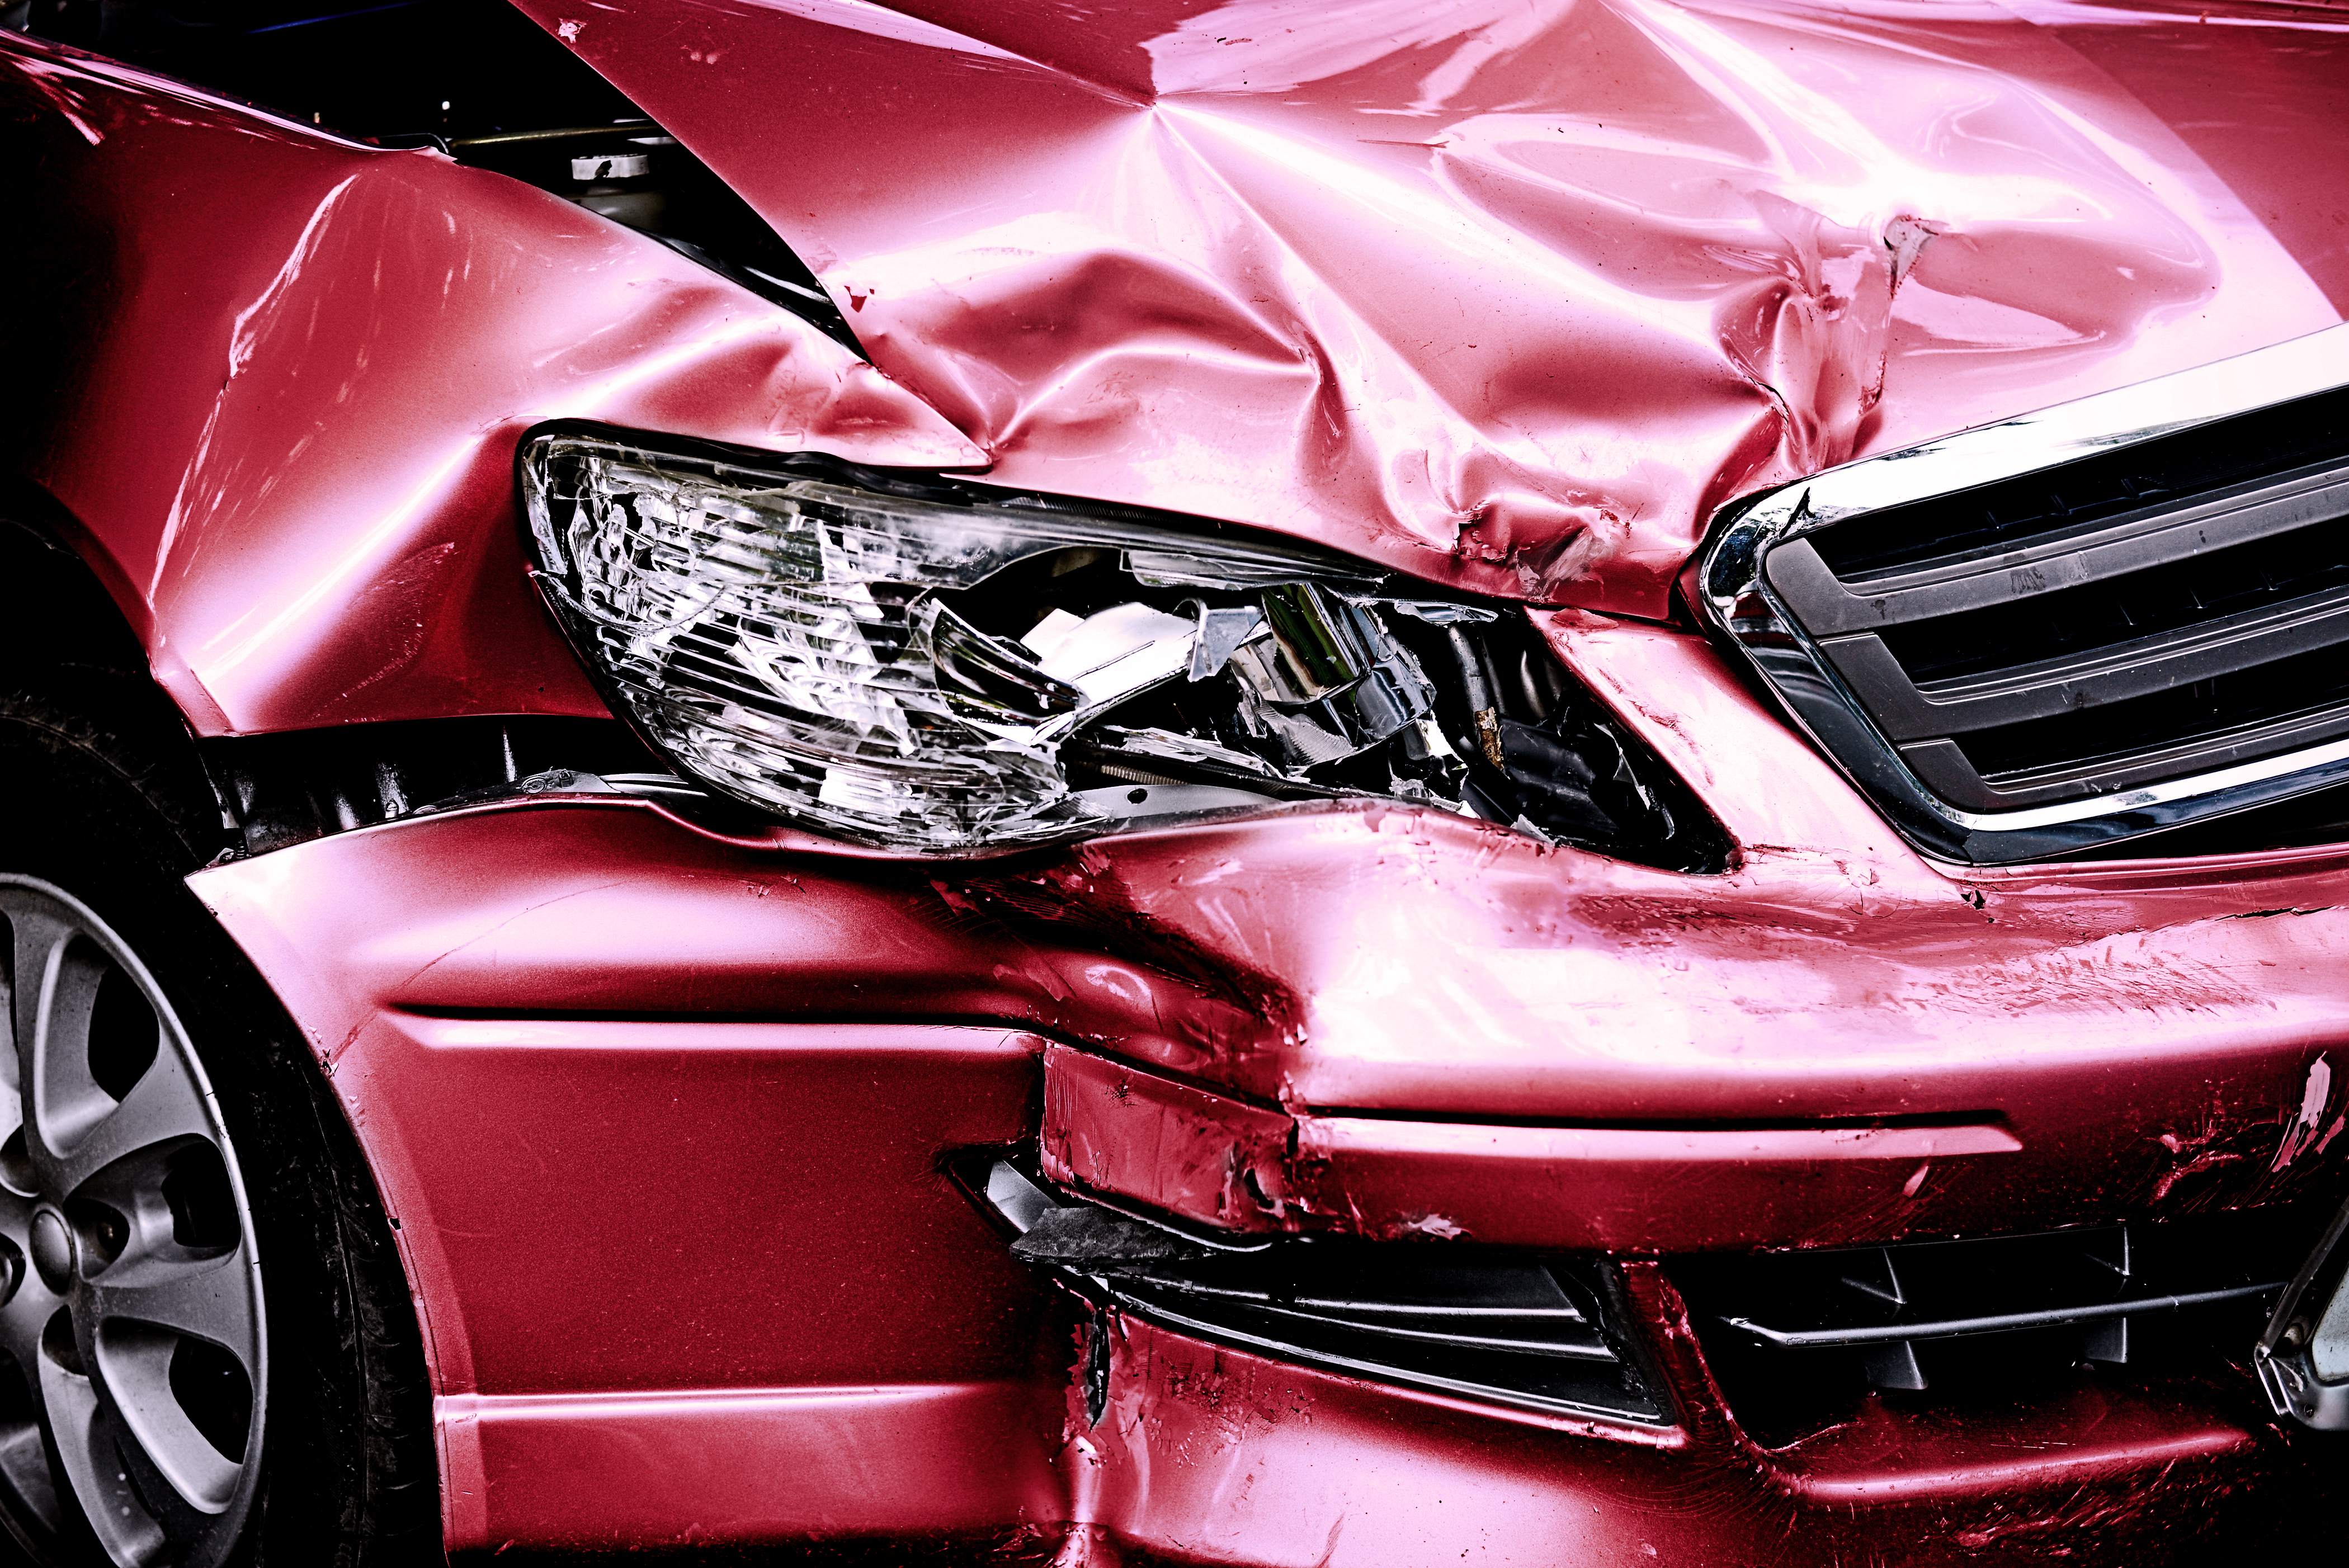 Ein beschädigtes Auto | Quelle: Shutterstock